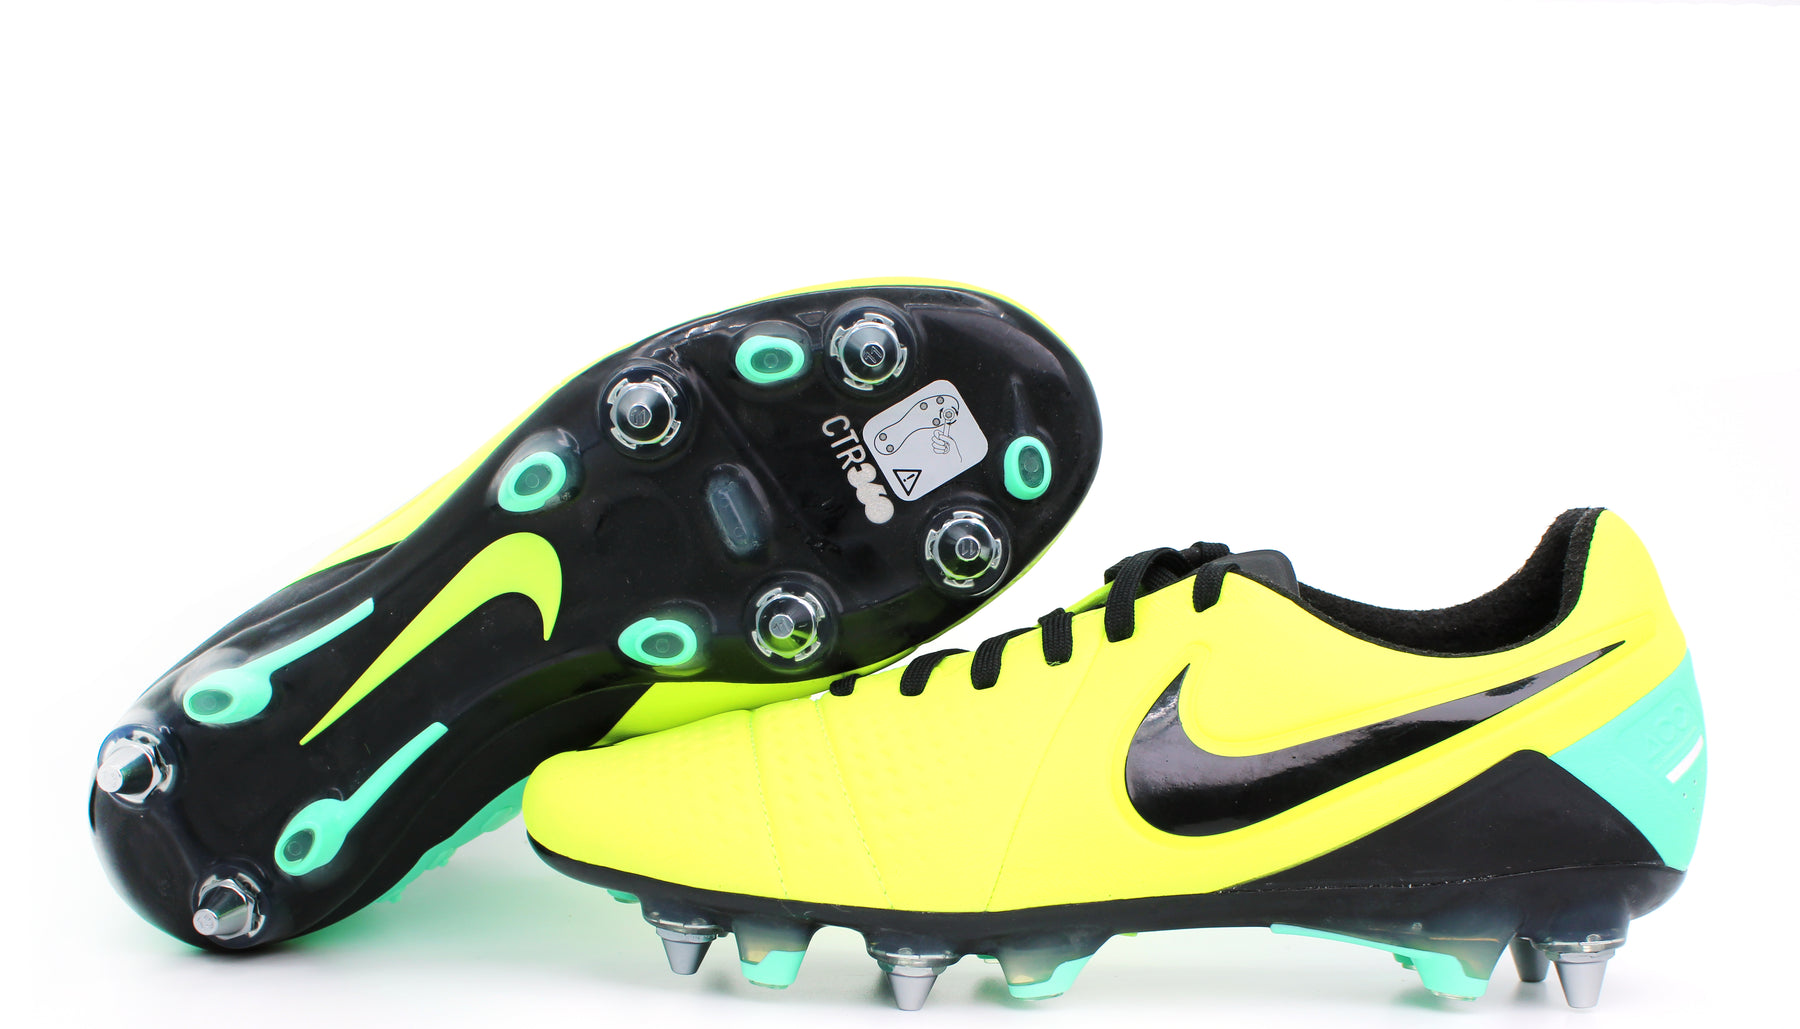 Morse kode Vask vinduer Præstation Nike CTR360 Maestri 3 SG Volt/Green/Black (525158-703) – Retro Soccer Cleats